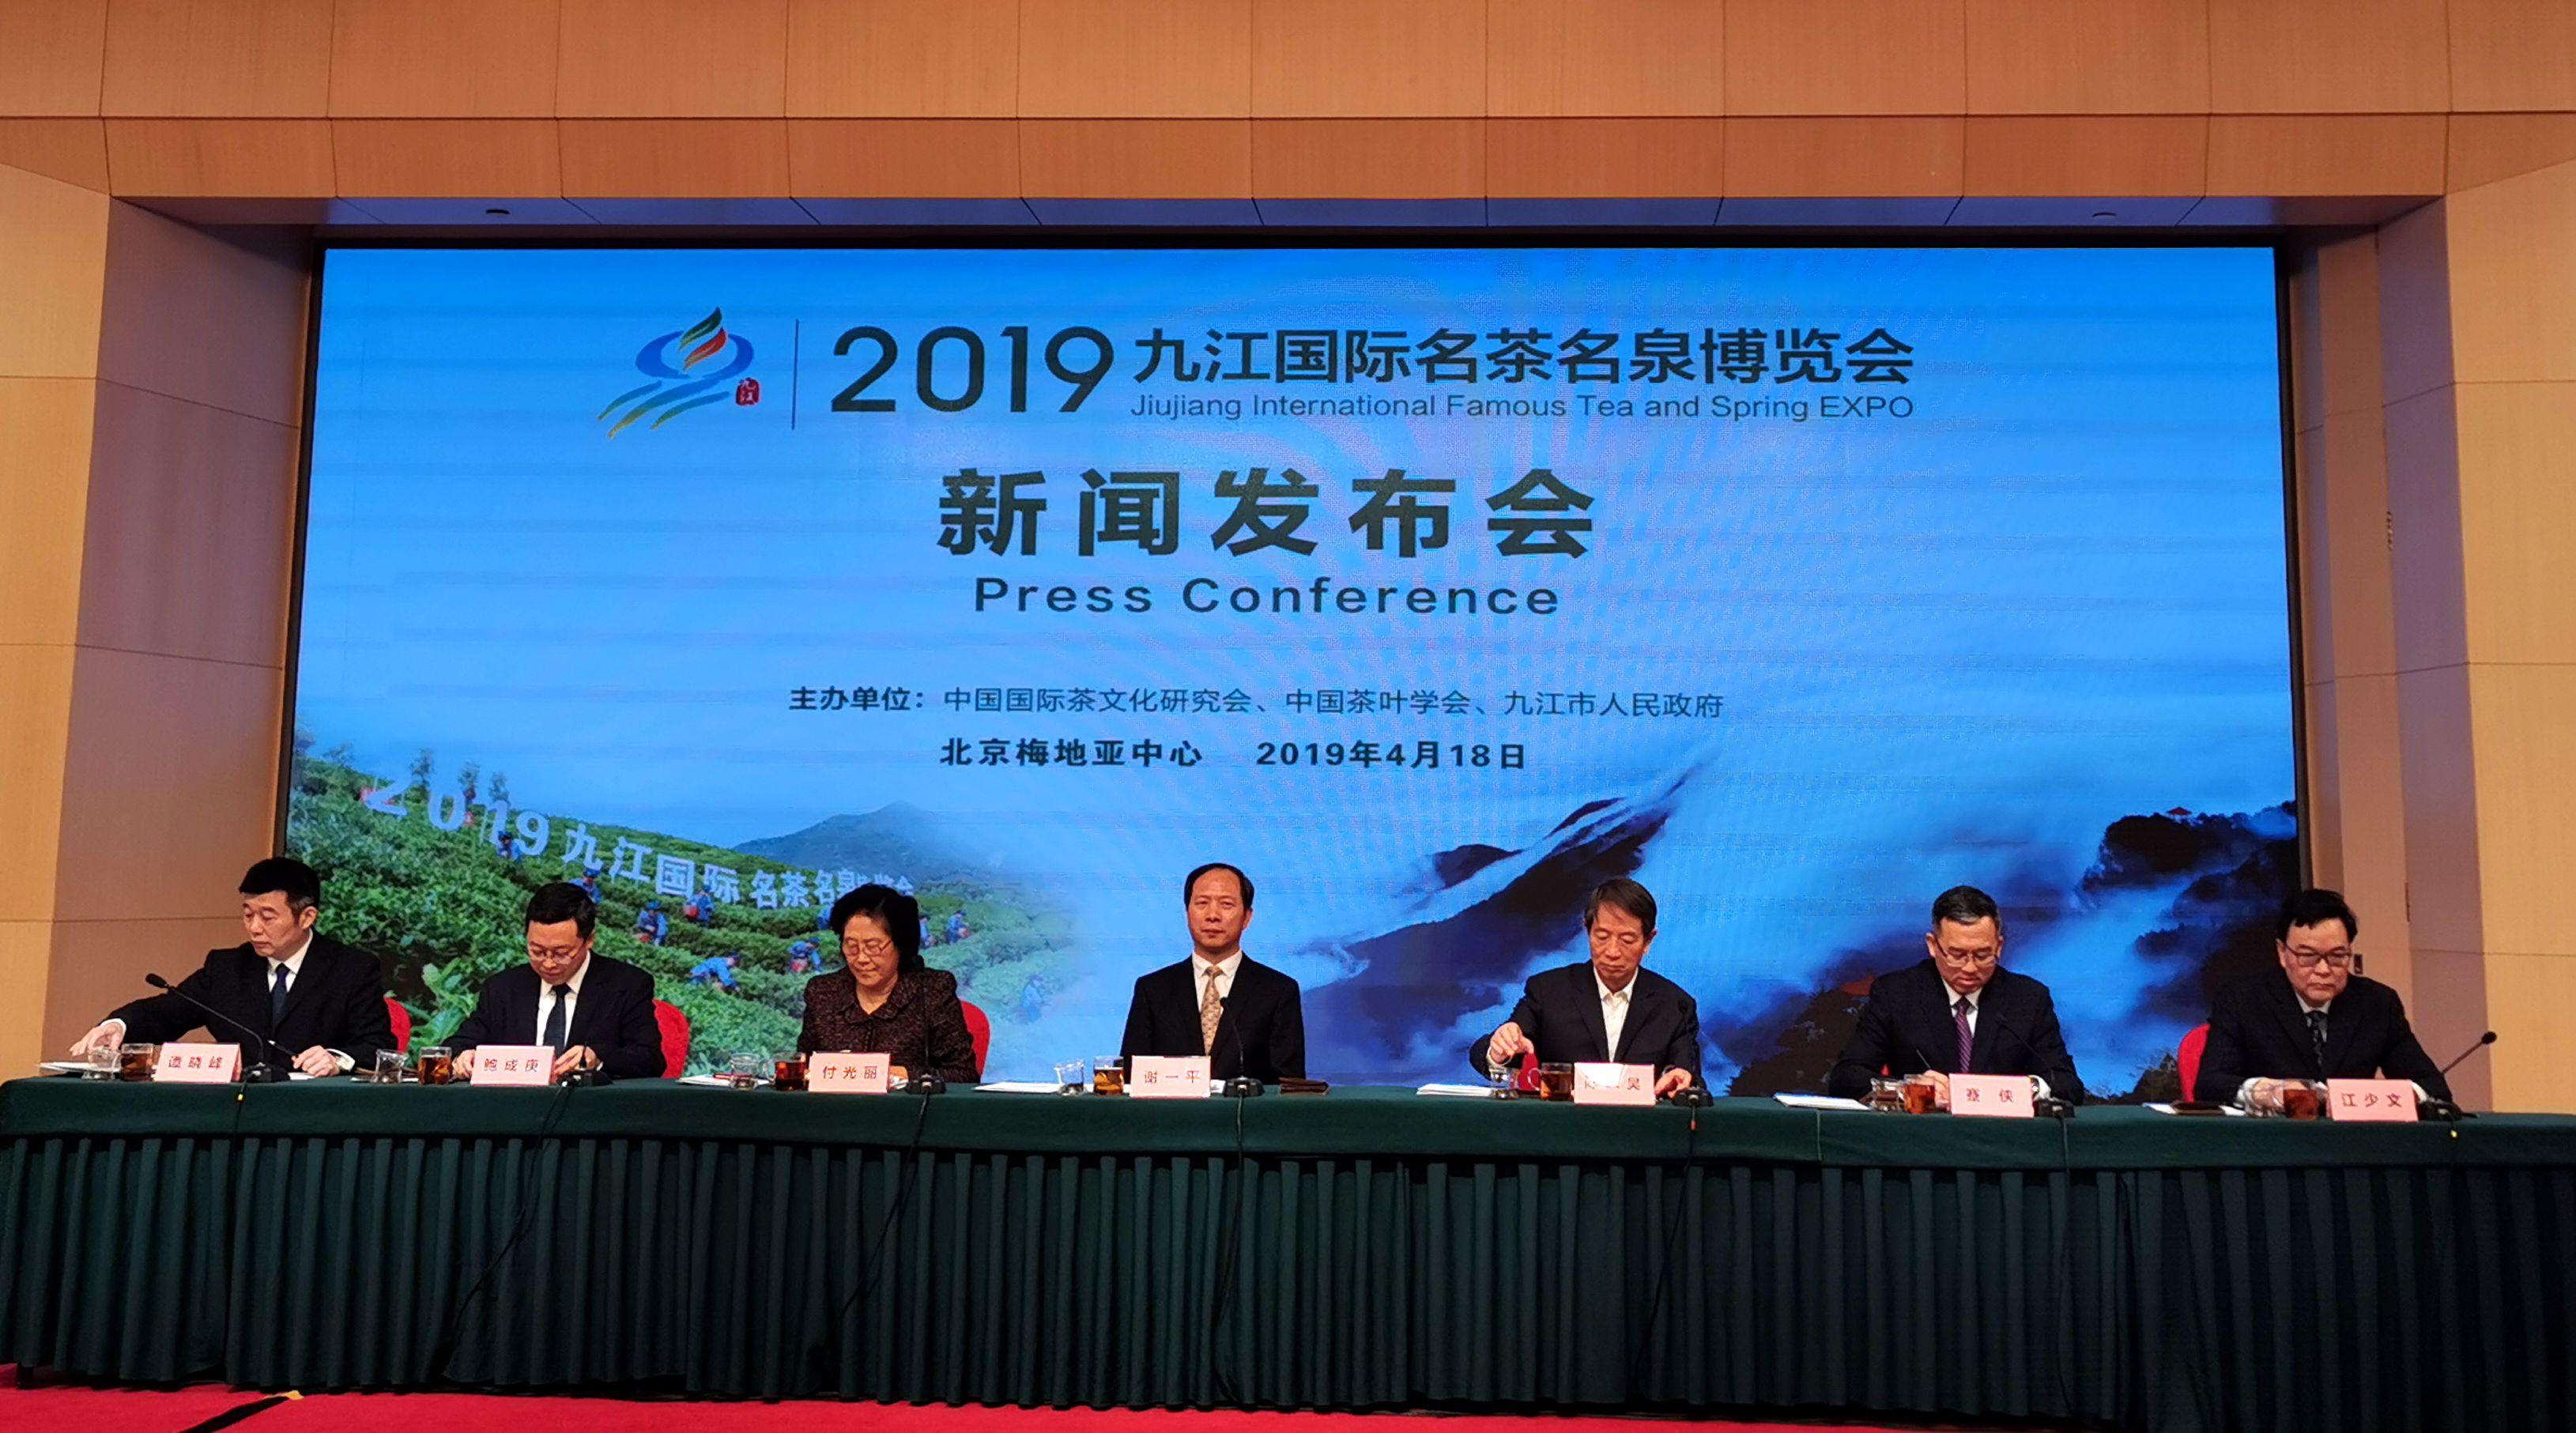 2019九江國際名茶名泉博覽會新聞發佈會18日在北京舉行C 江鑫嫻 攝